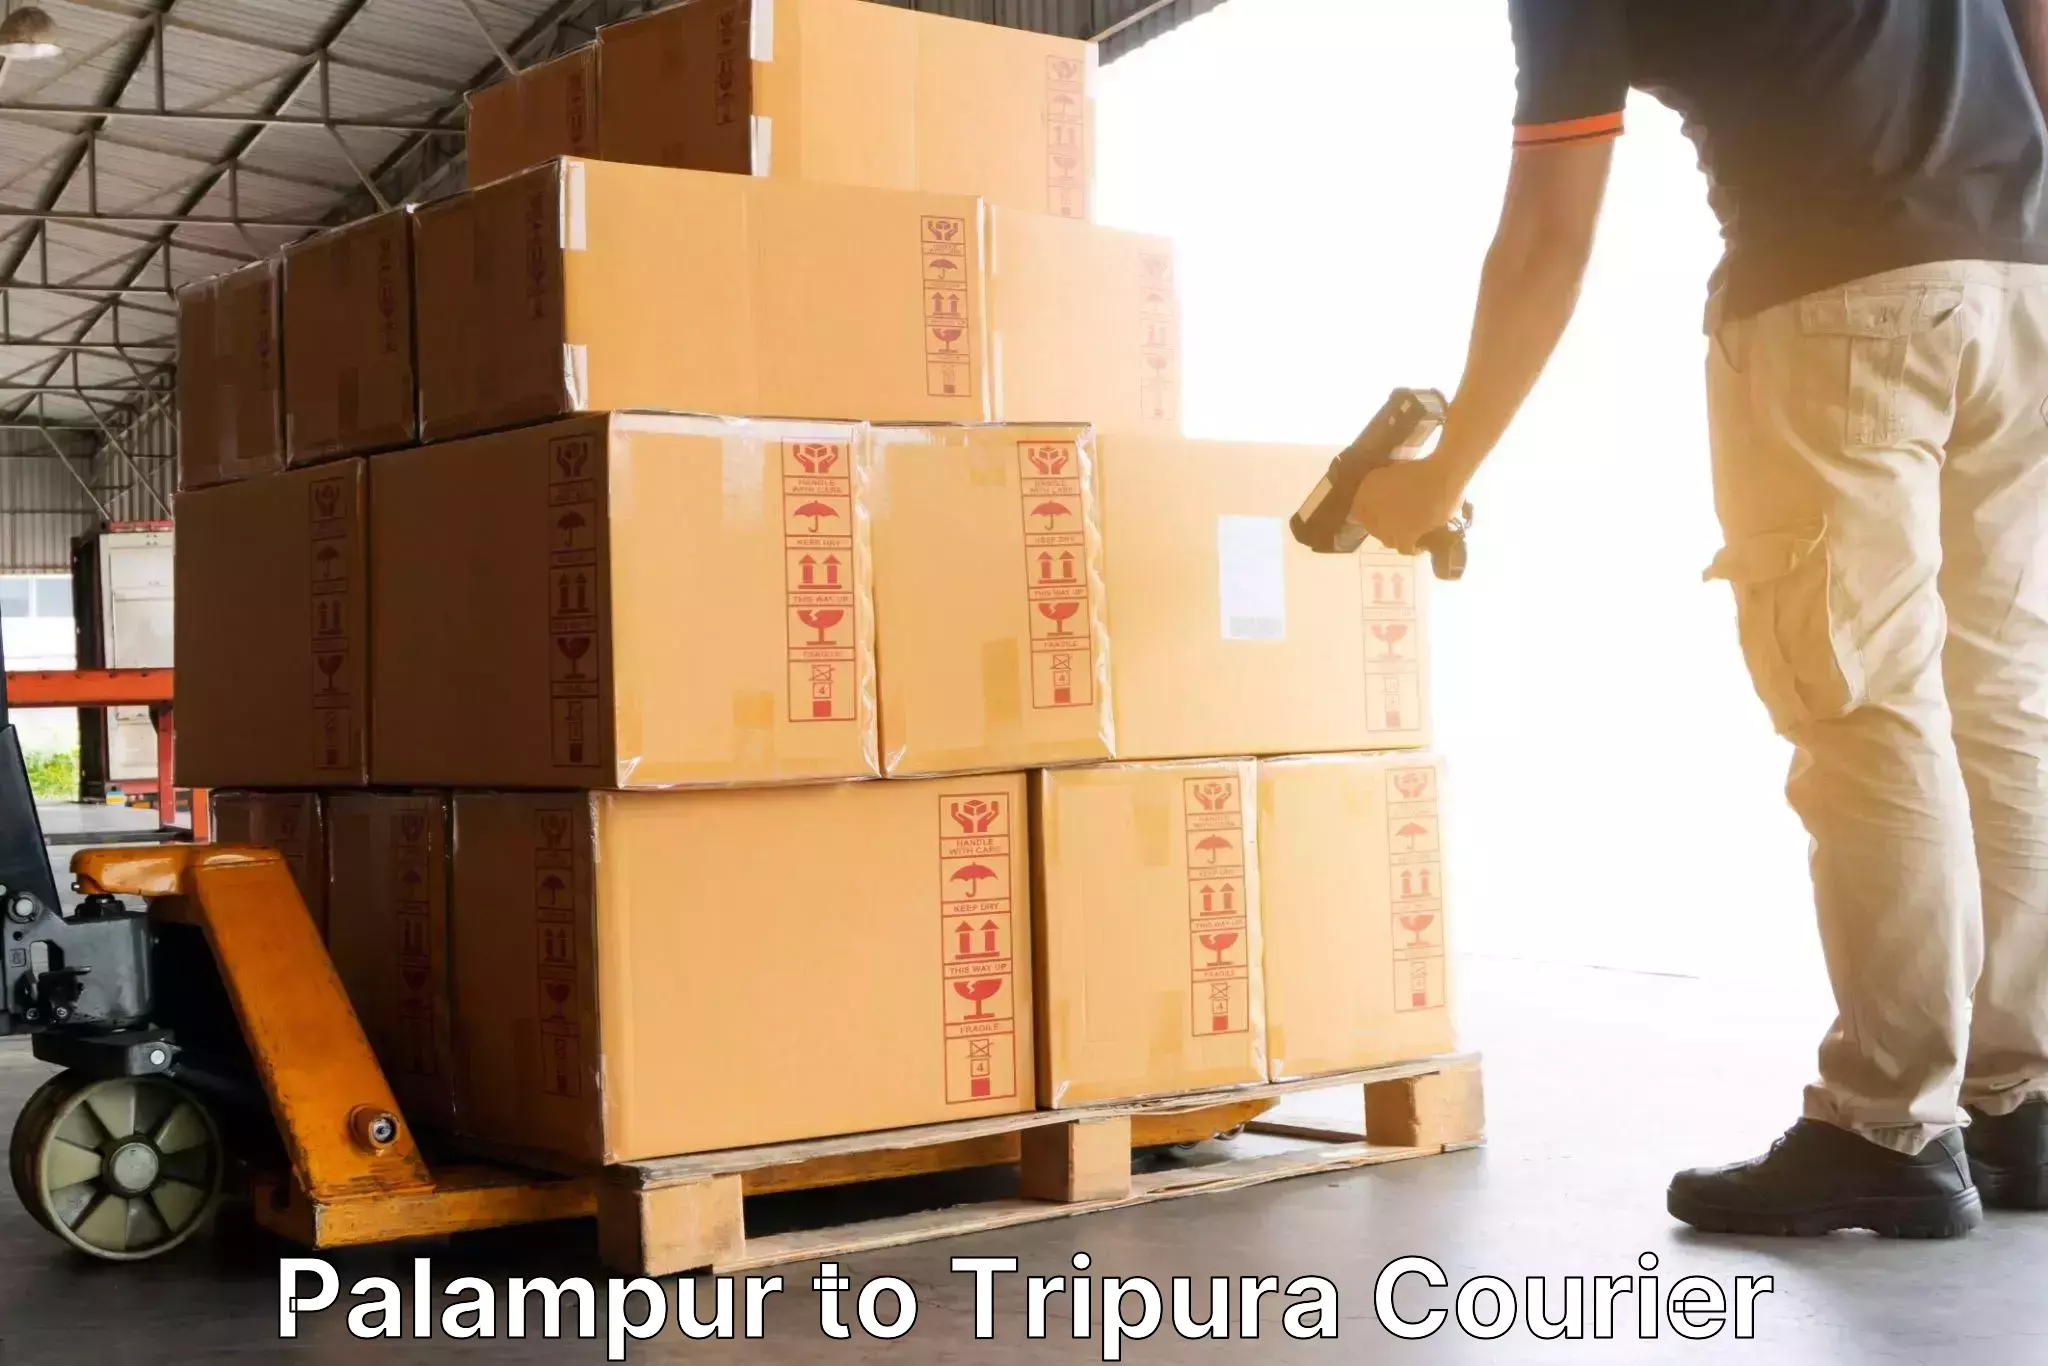 Express courier facilities Palampur to Manu Bazar